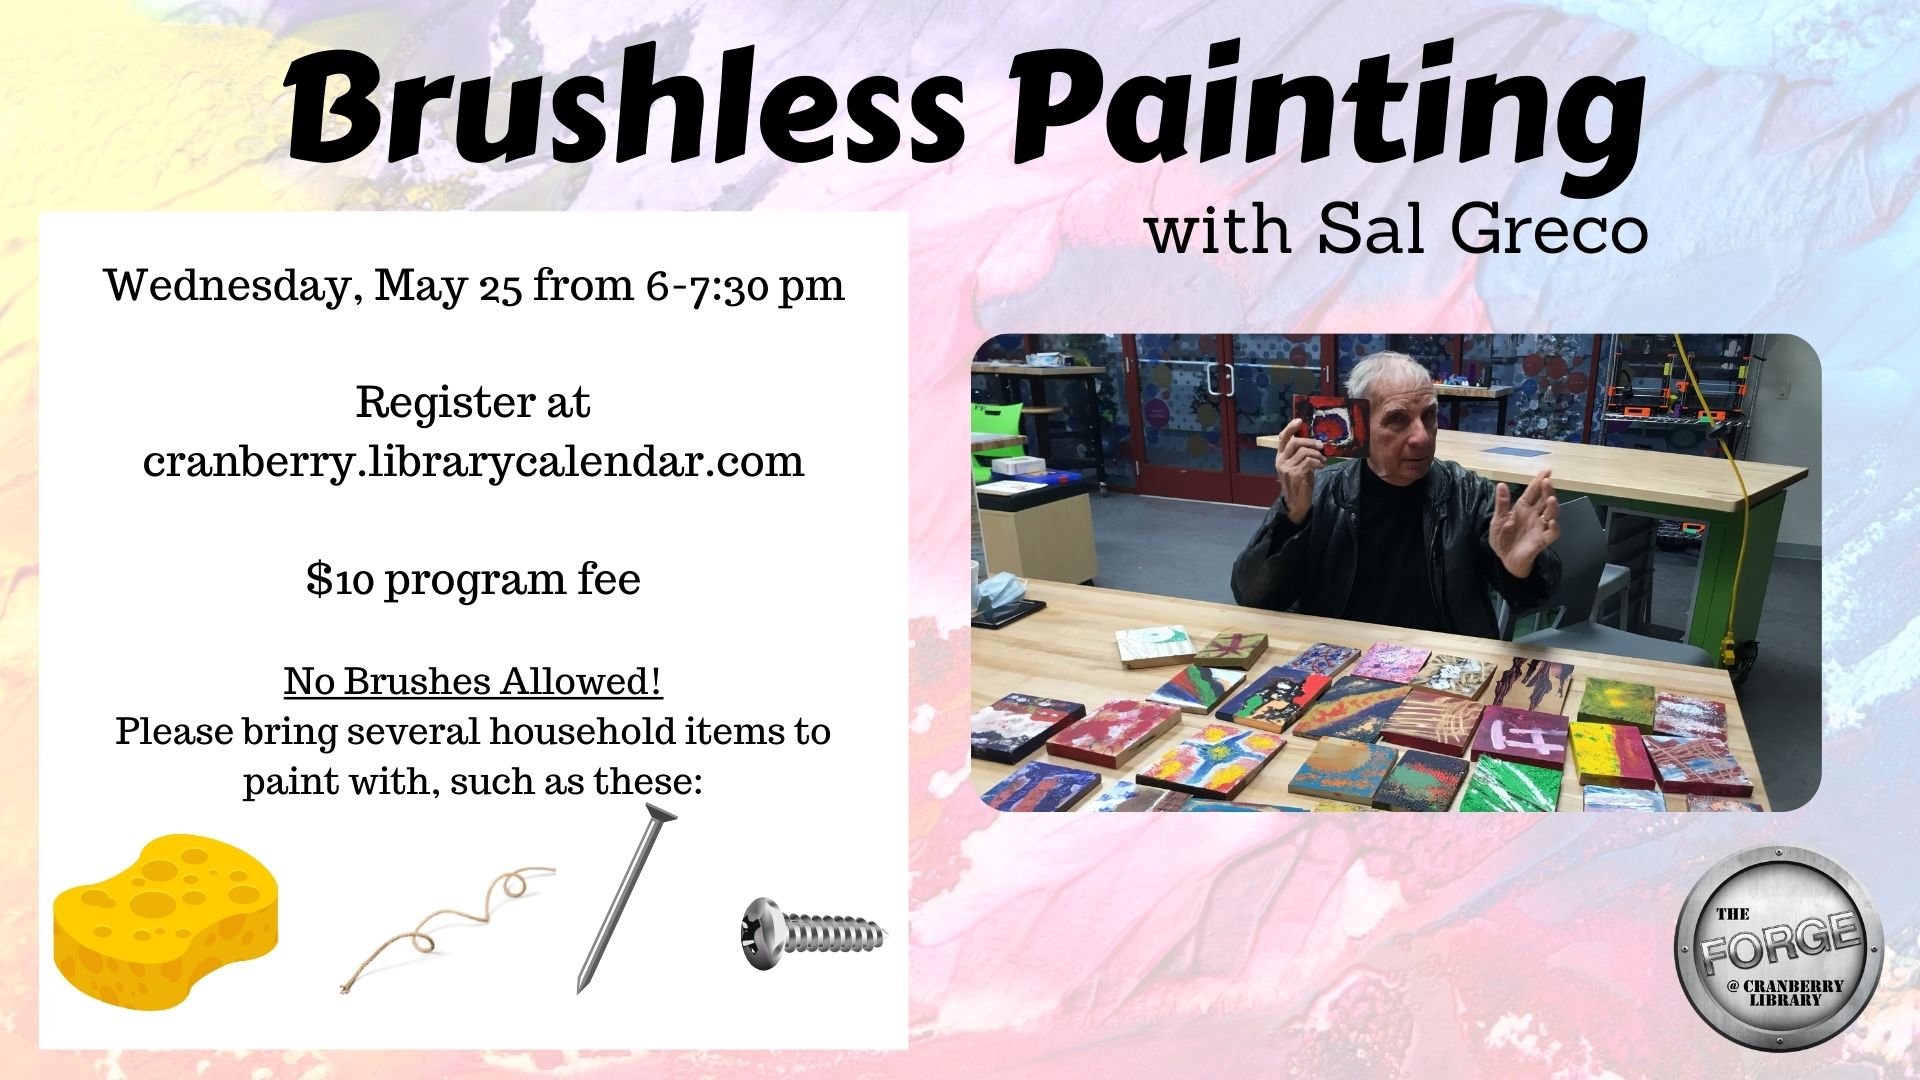 Flyer for Brushless Painting program